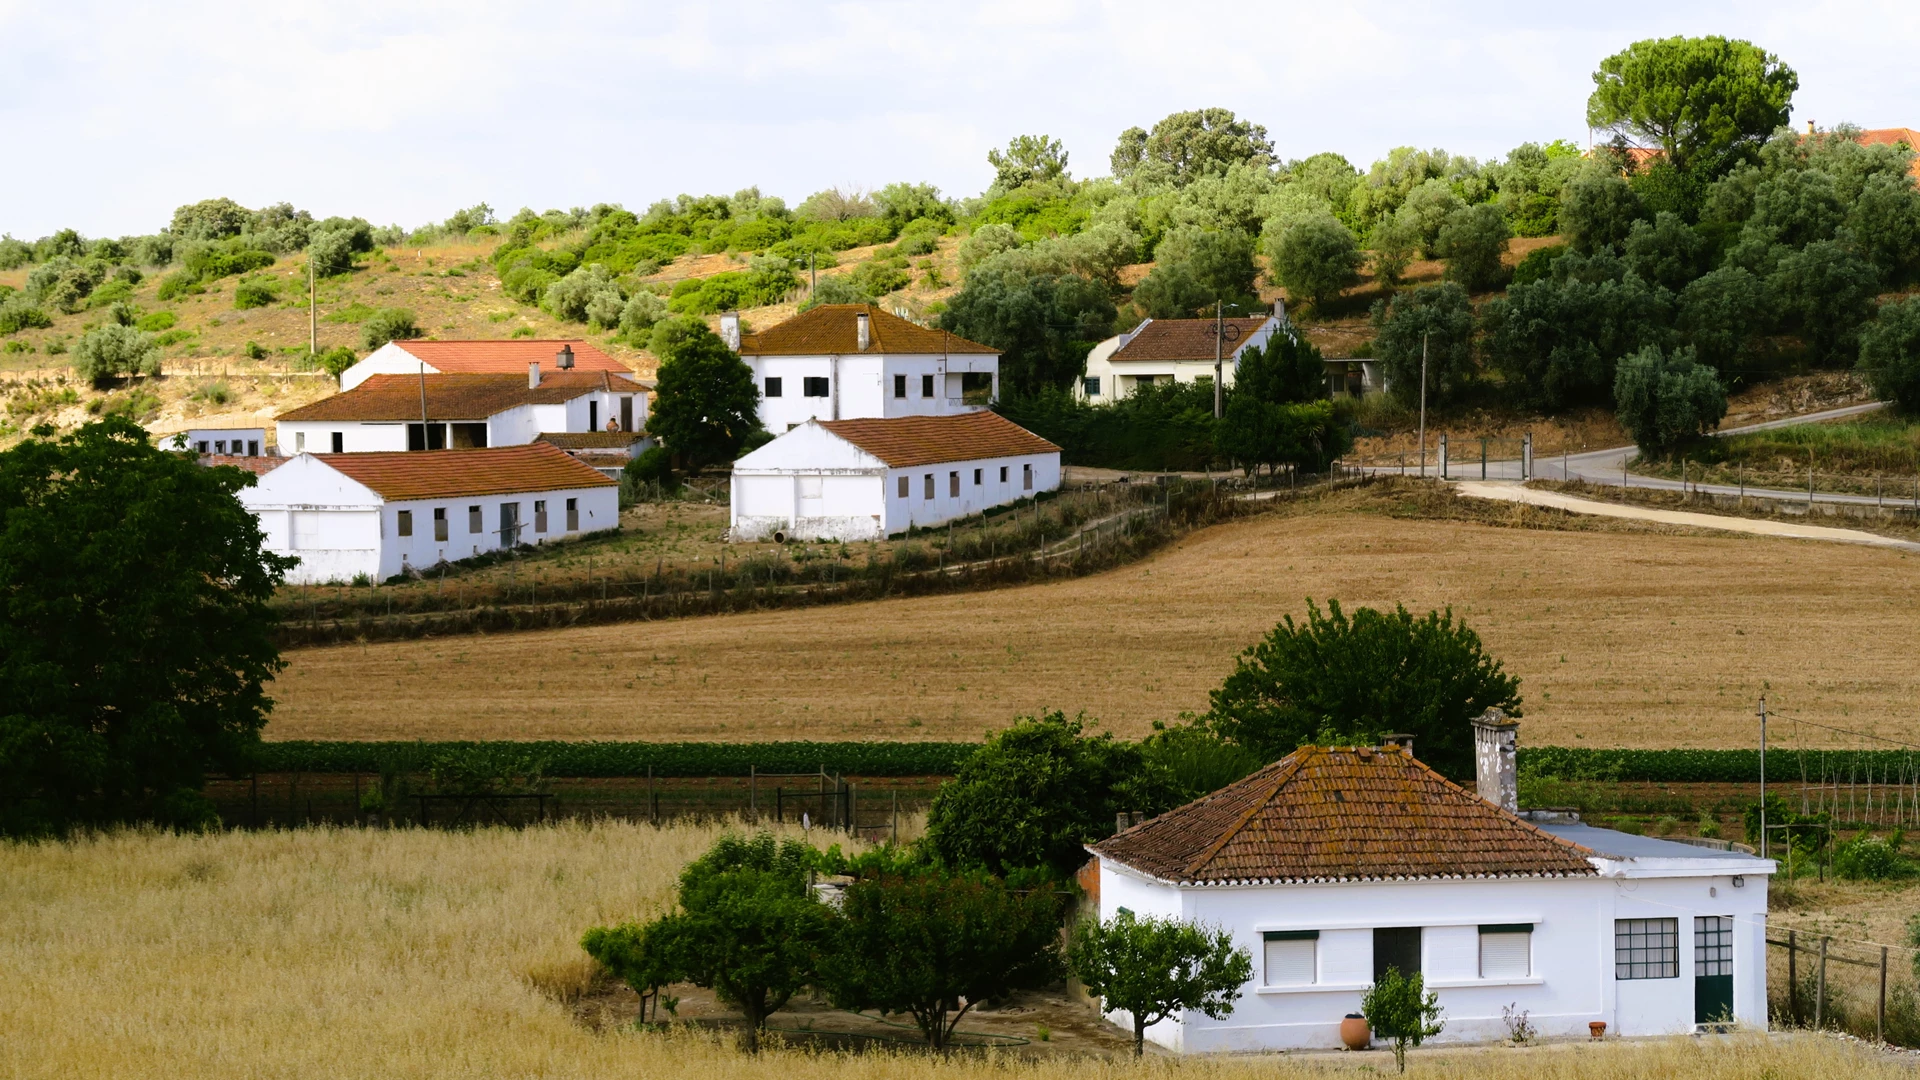 Procura-se Casas de Campo em Portugal